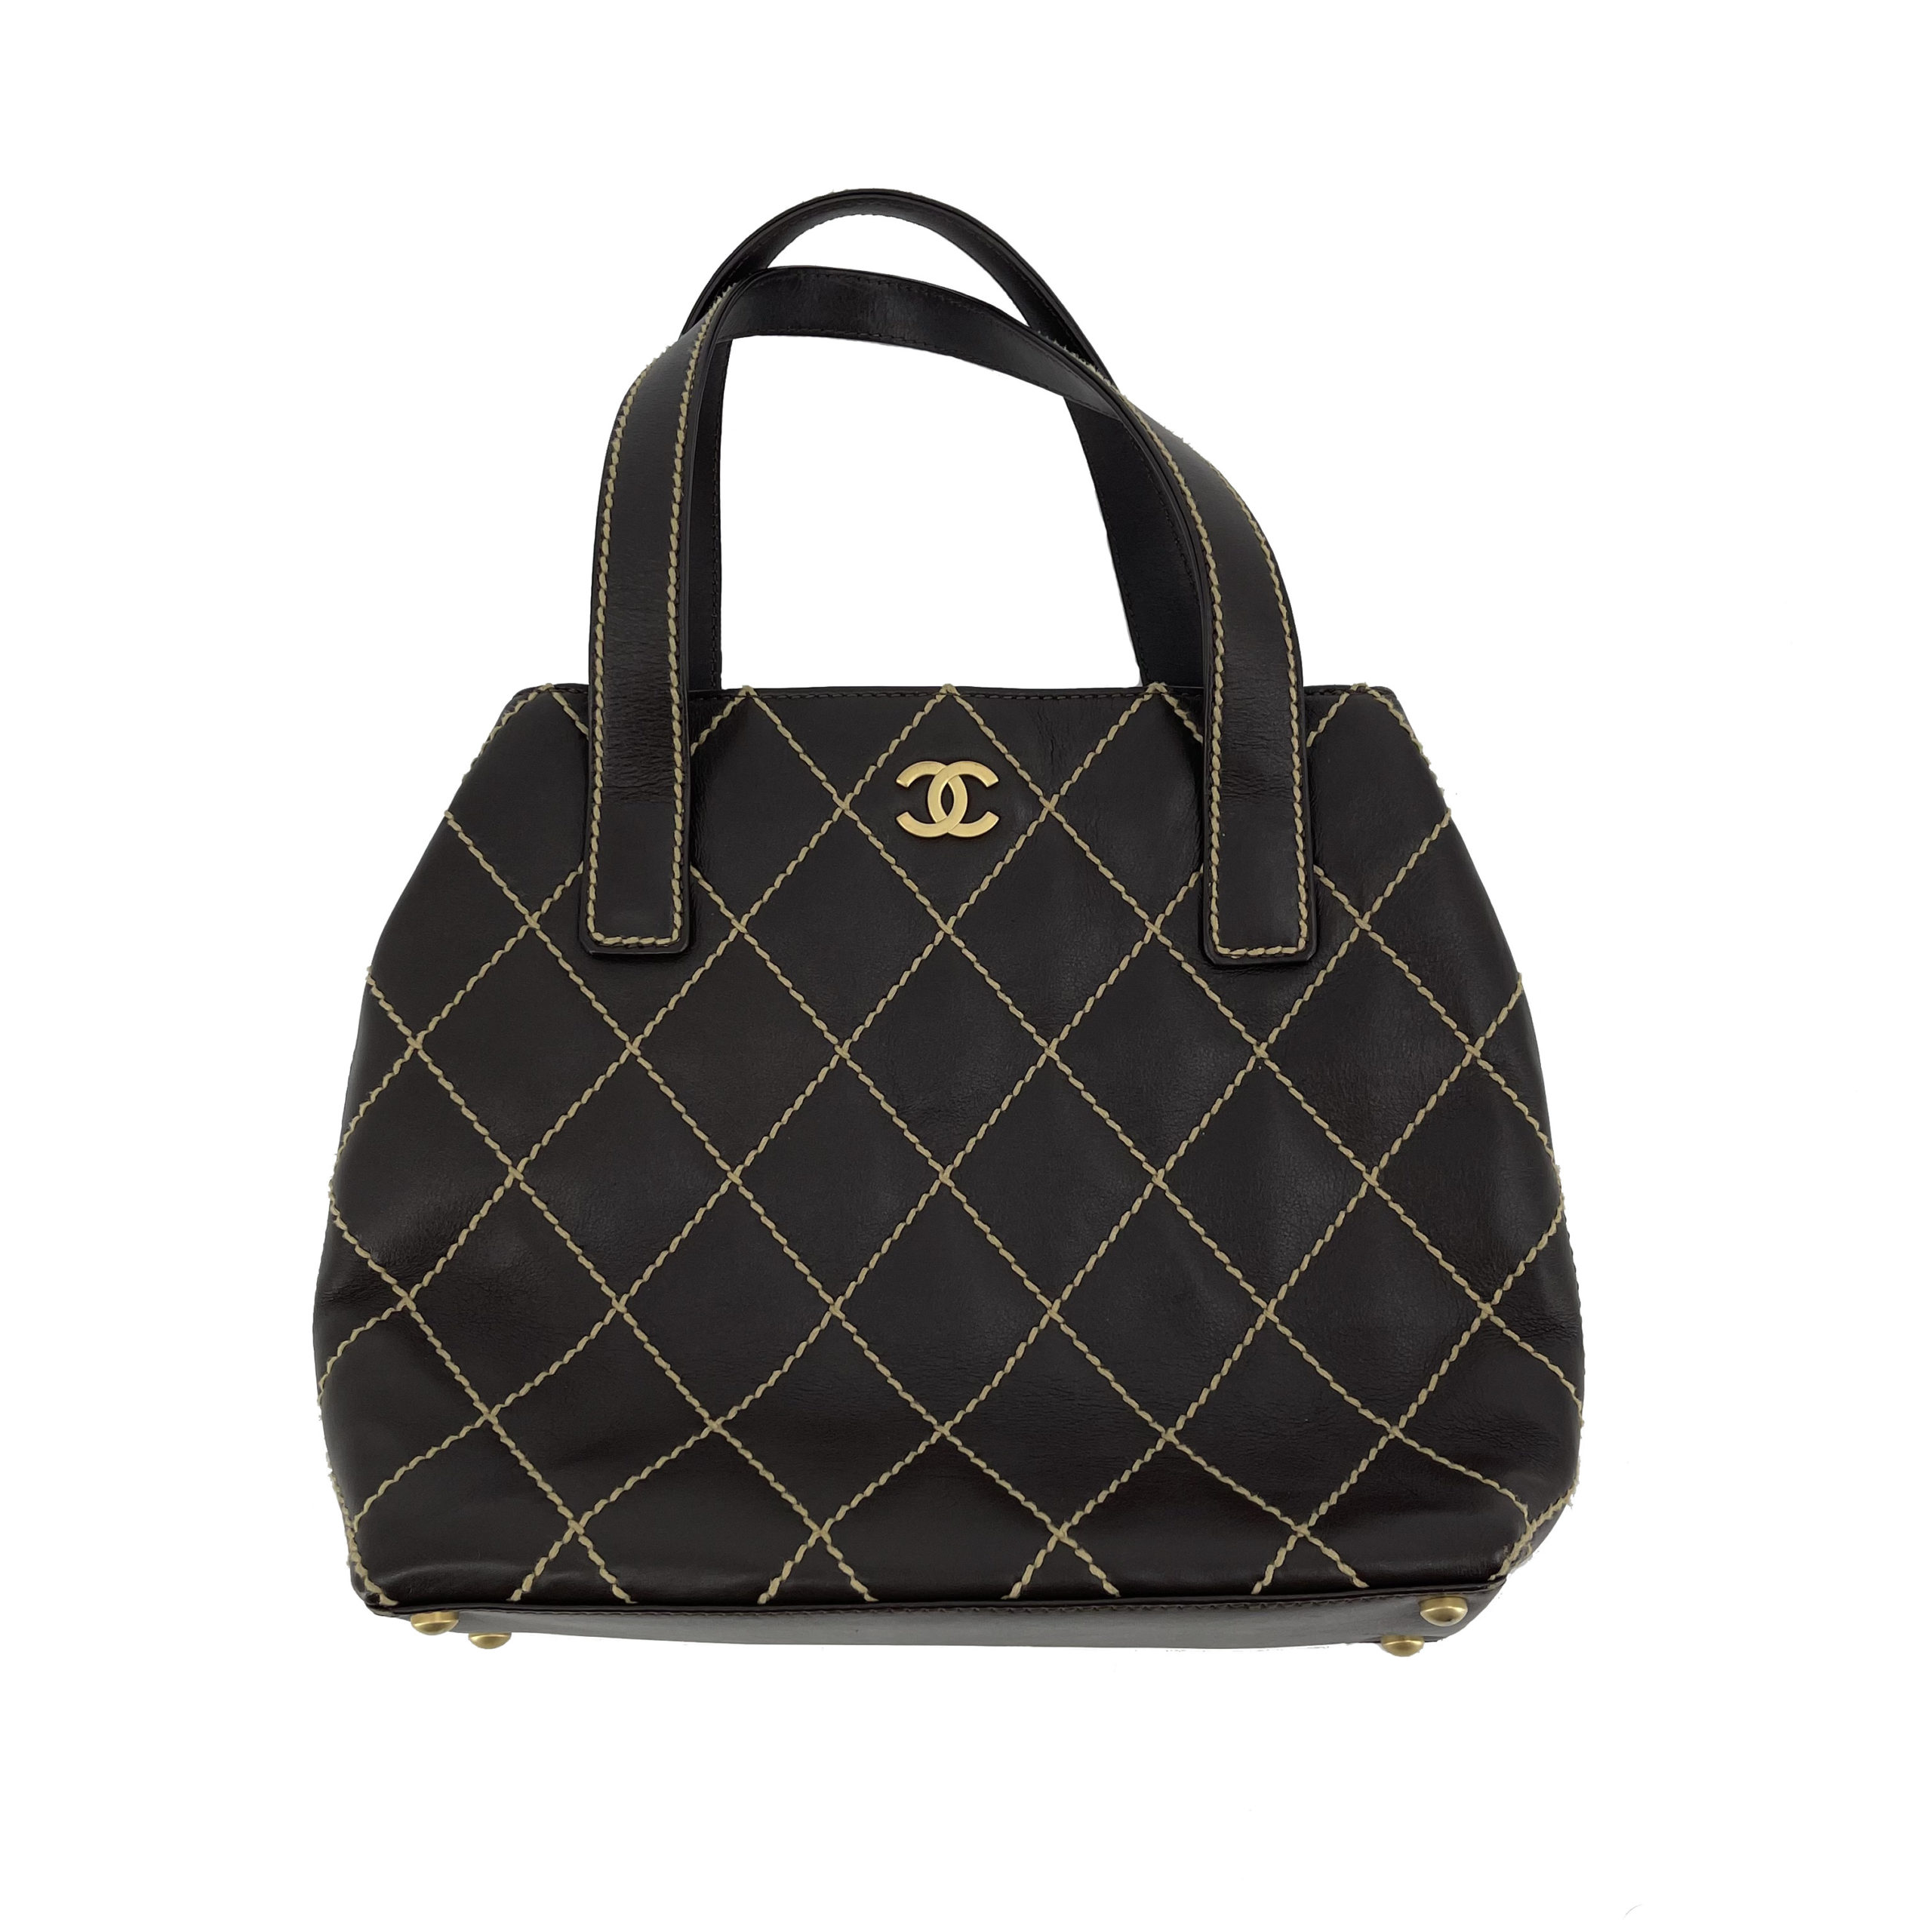 Chanel Wild Stitch bag - DesignerSupplier